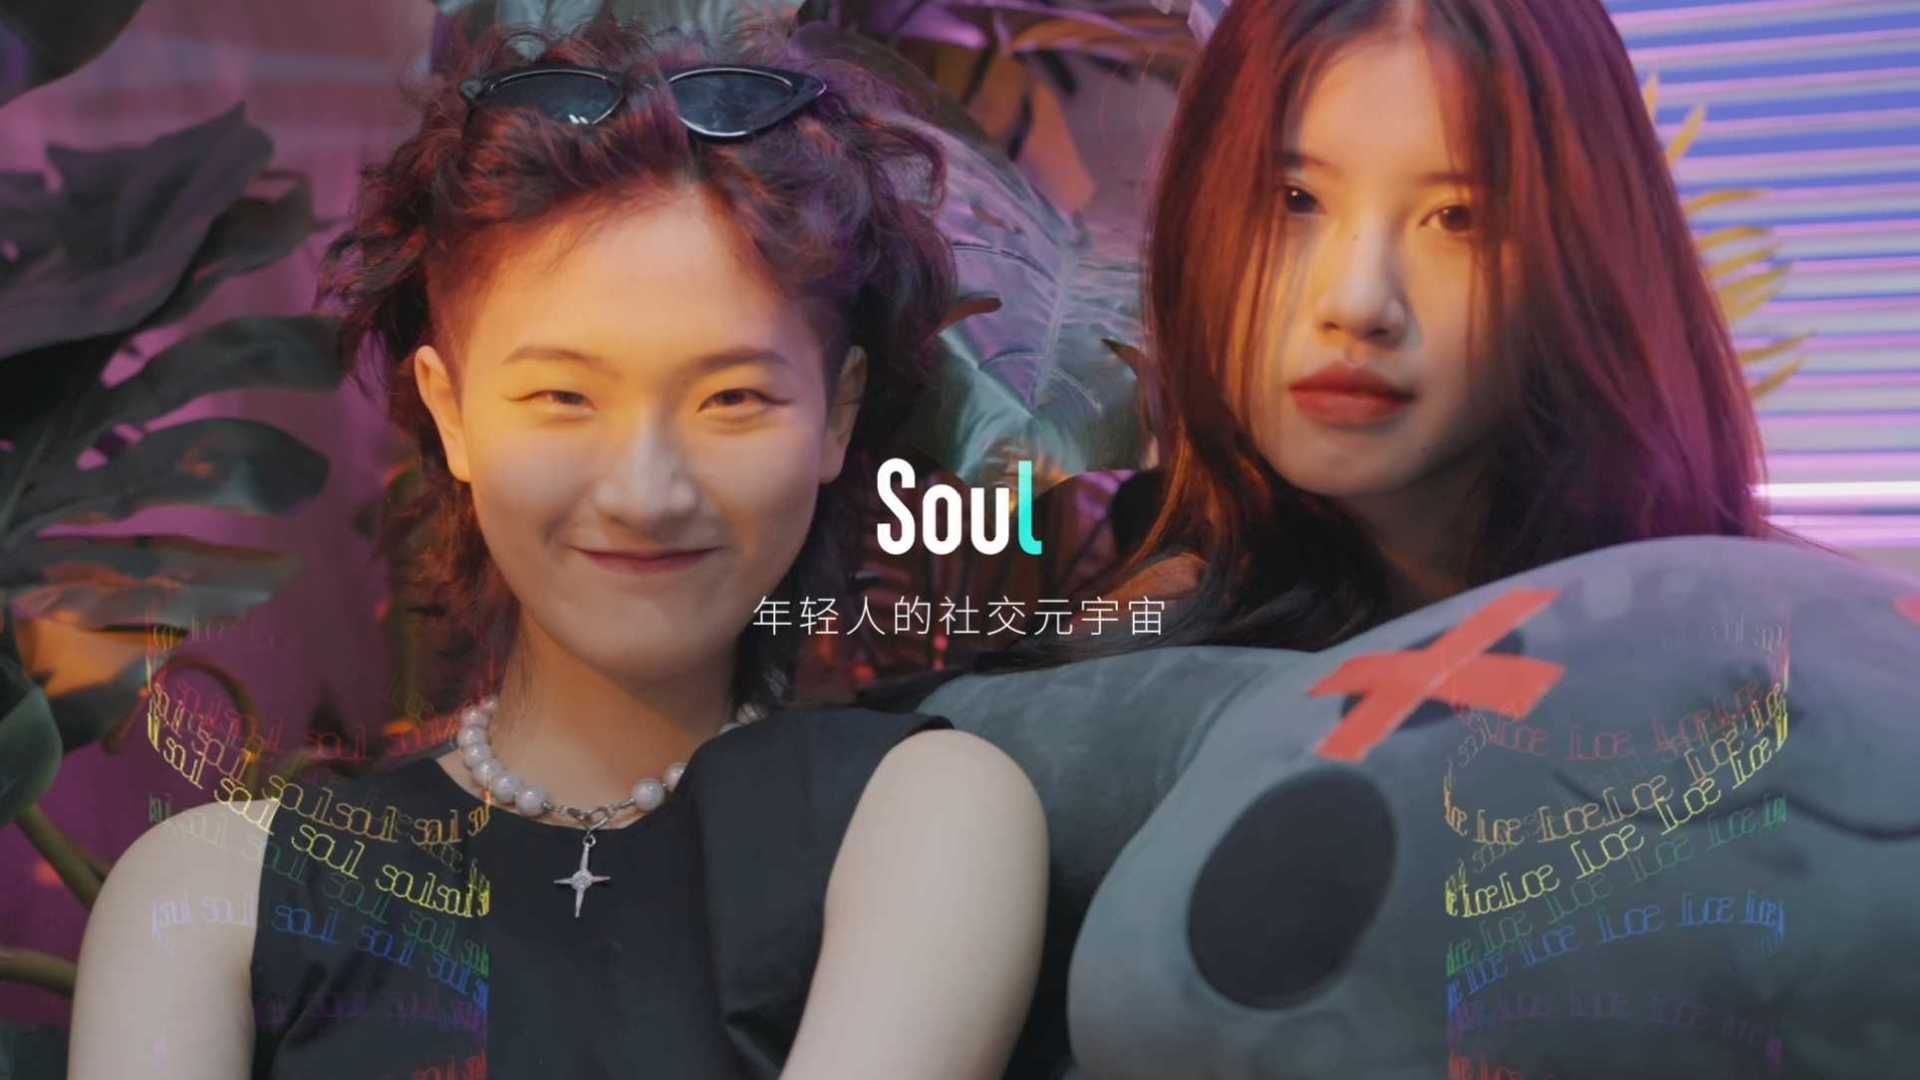 soul  《做自己》 短视频广告